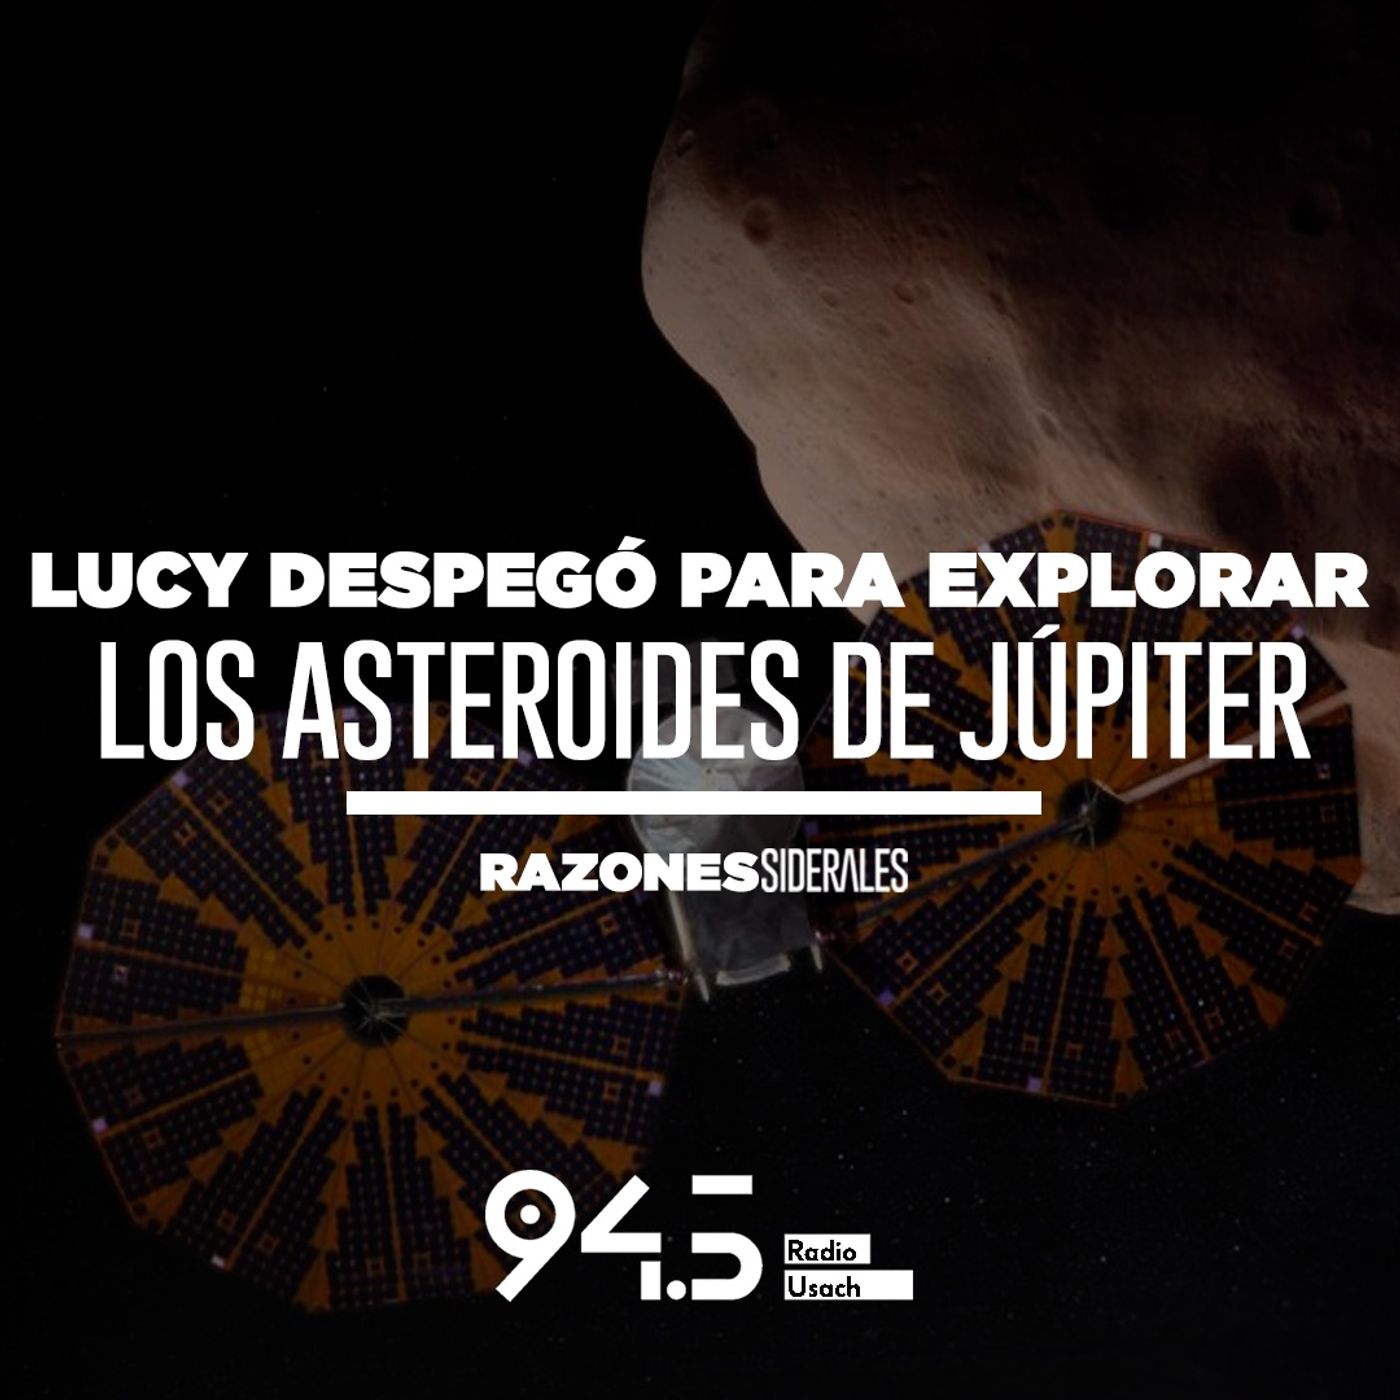 Lucy despegó para explorar los asteroides de Júpiter